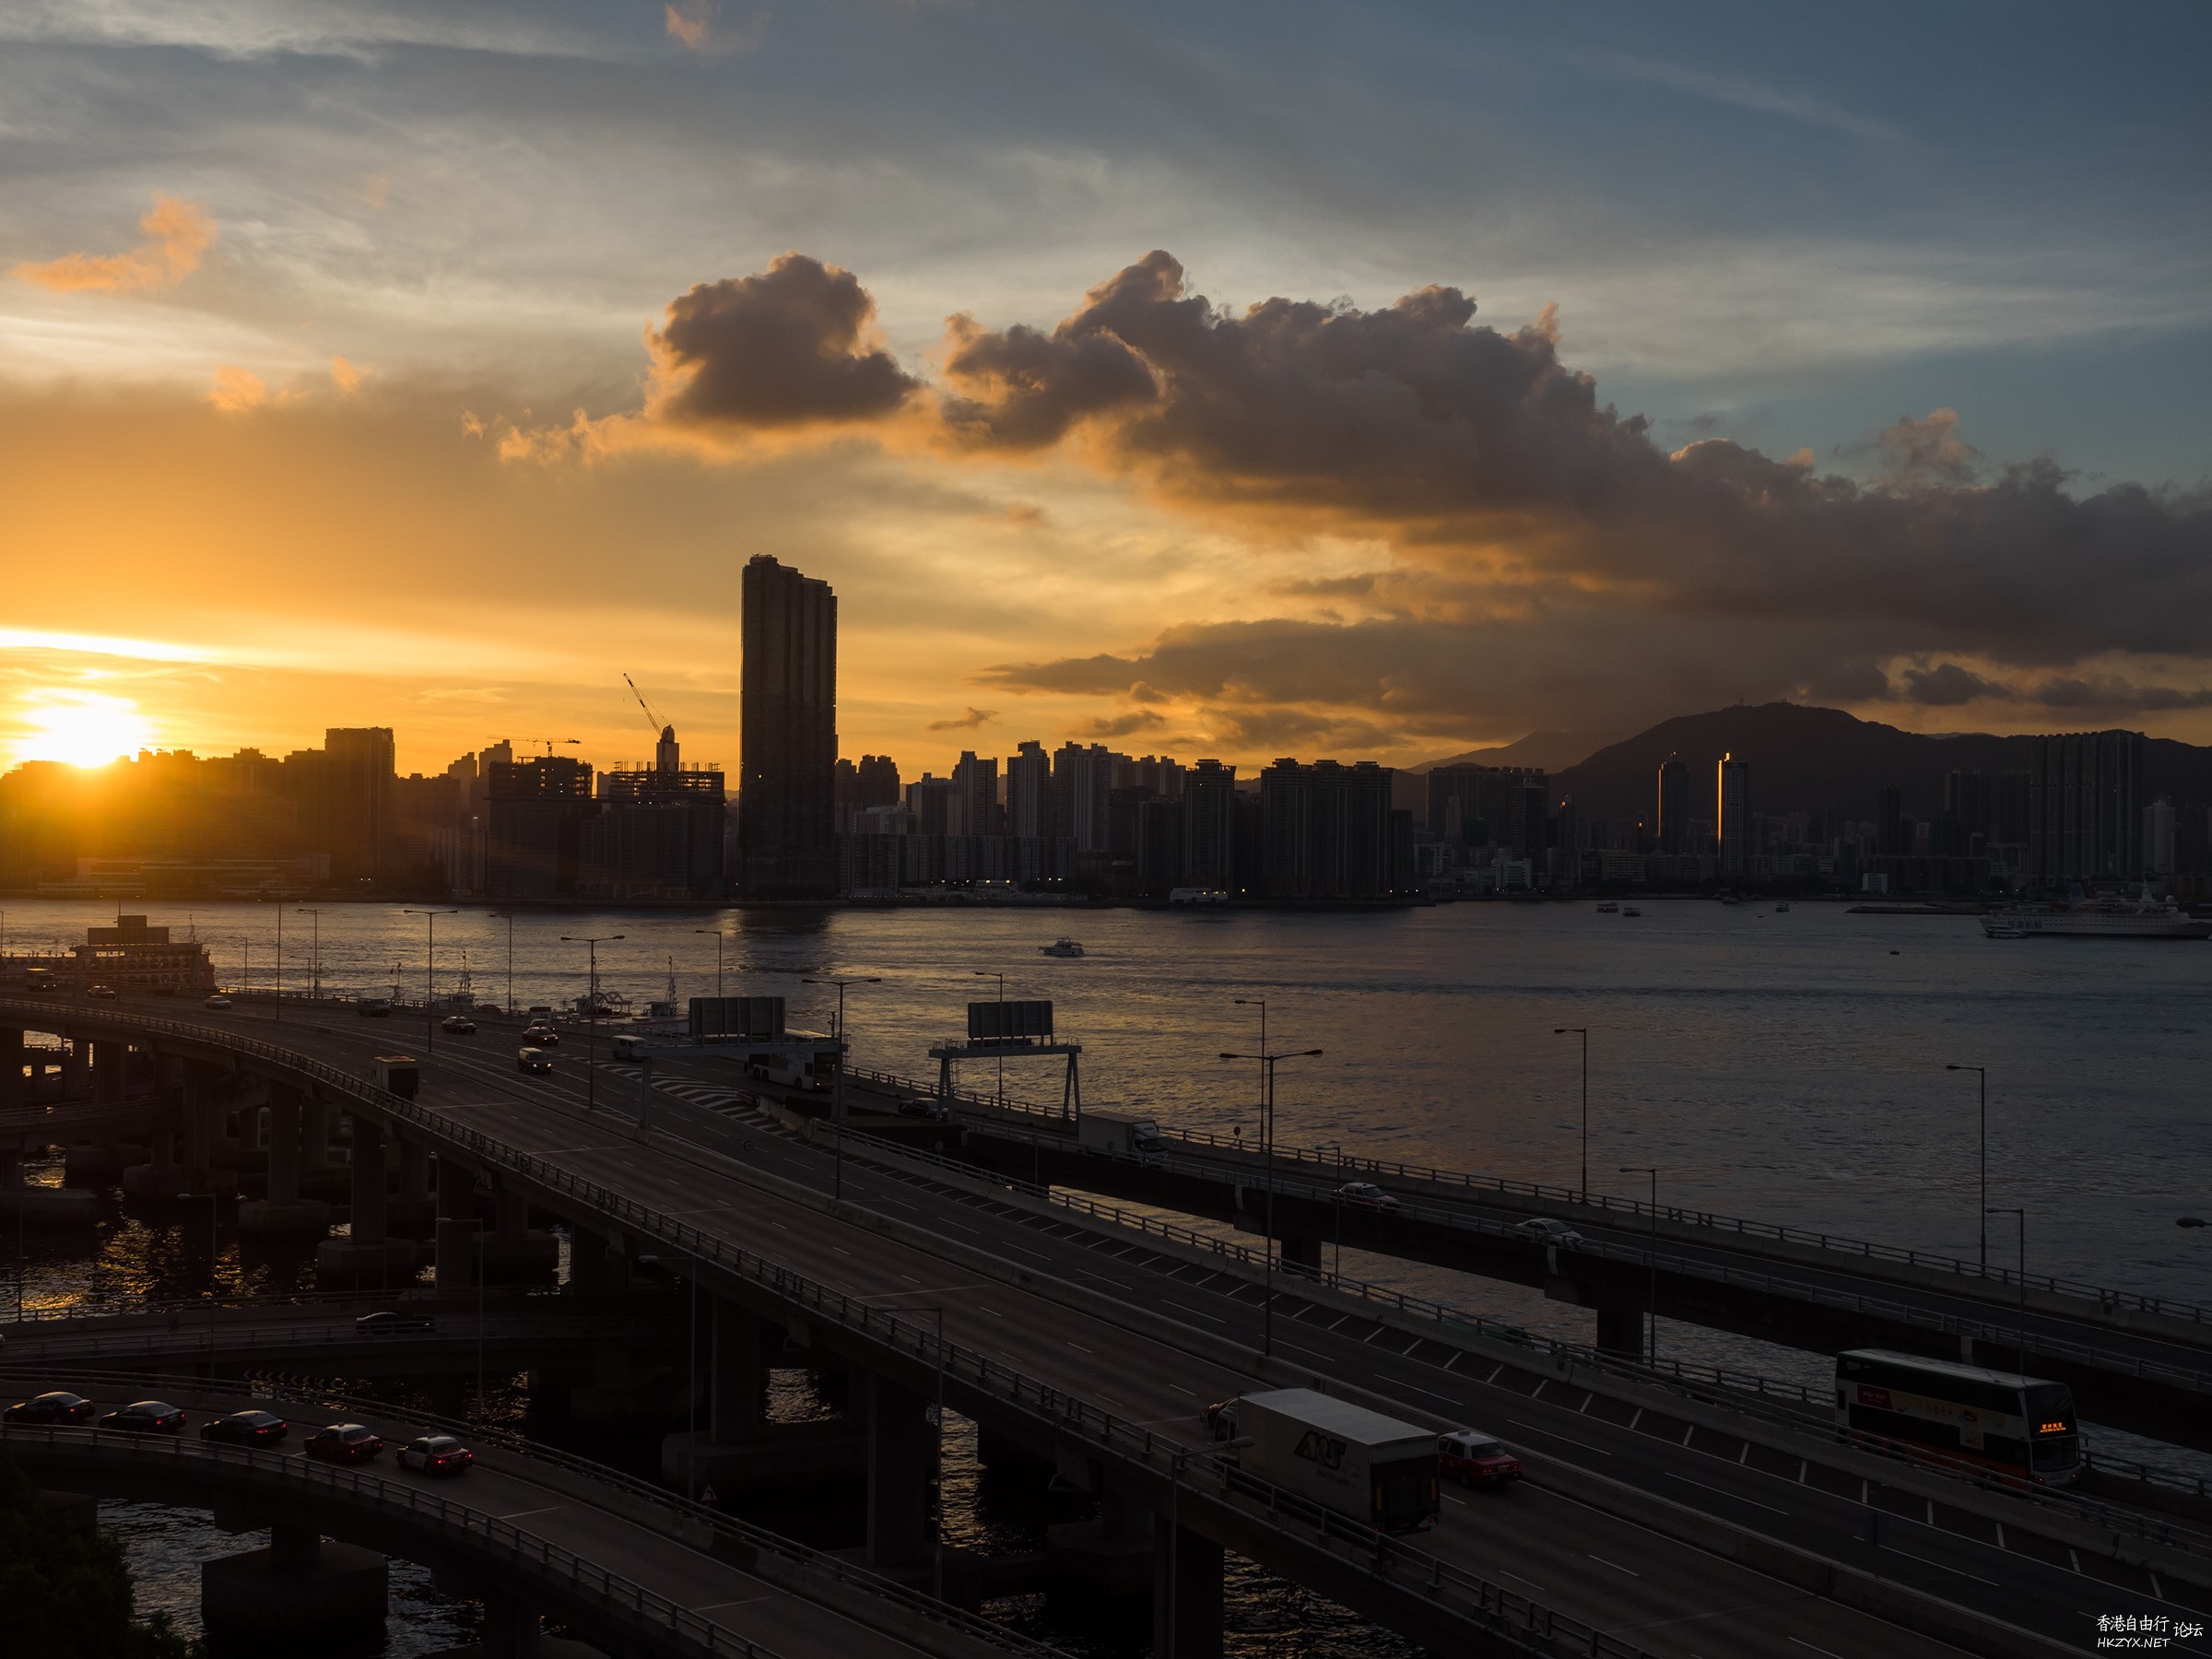 望出窗就影到美景-H.K.  H.K.Sunset 香港夕景